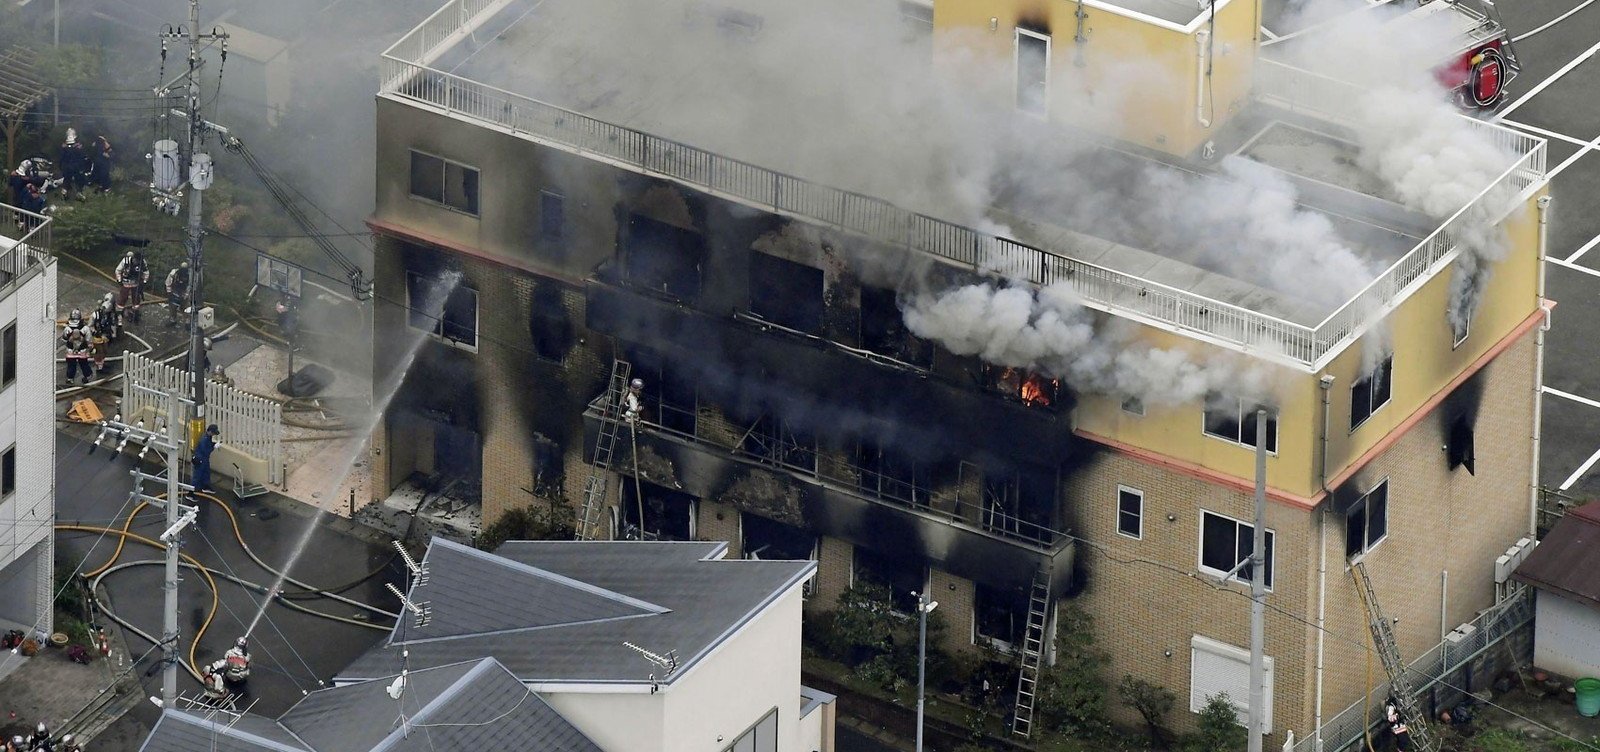 Suspeito de provocar incêndio no Japão já foi indiciado por assalto